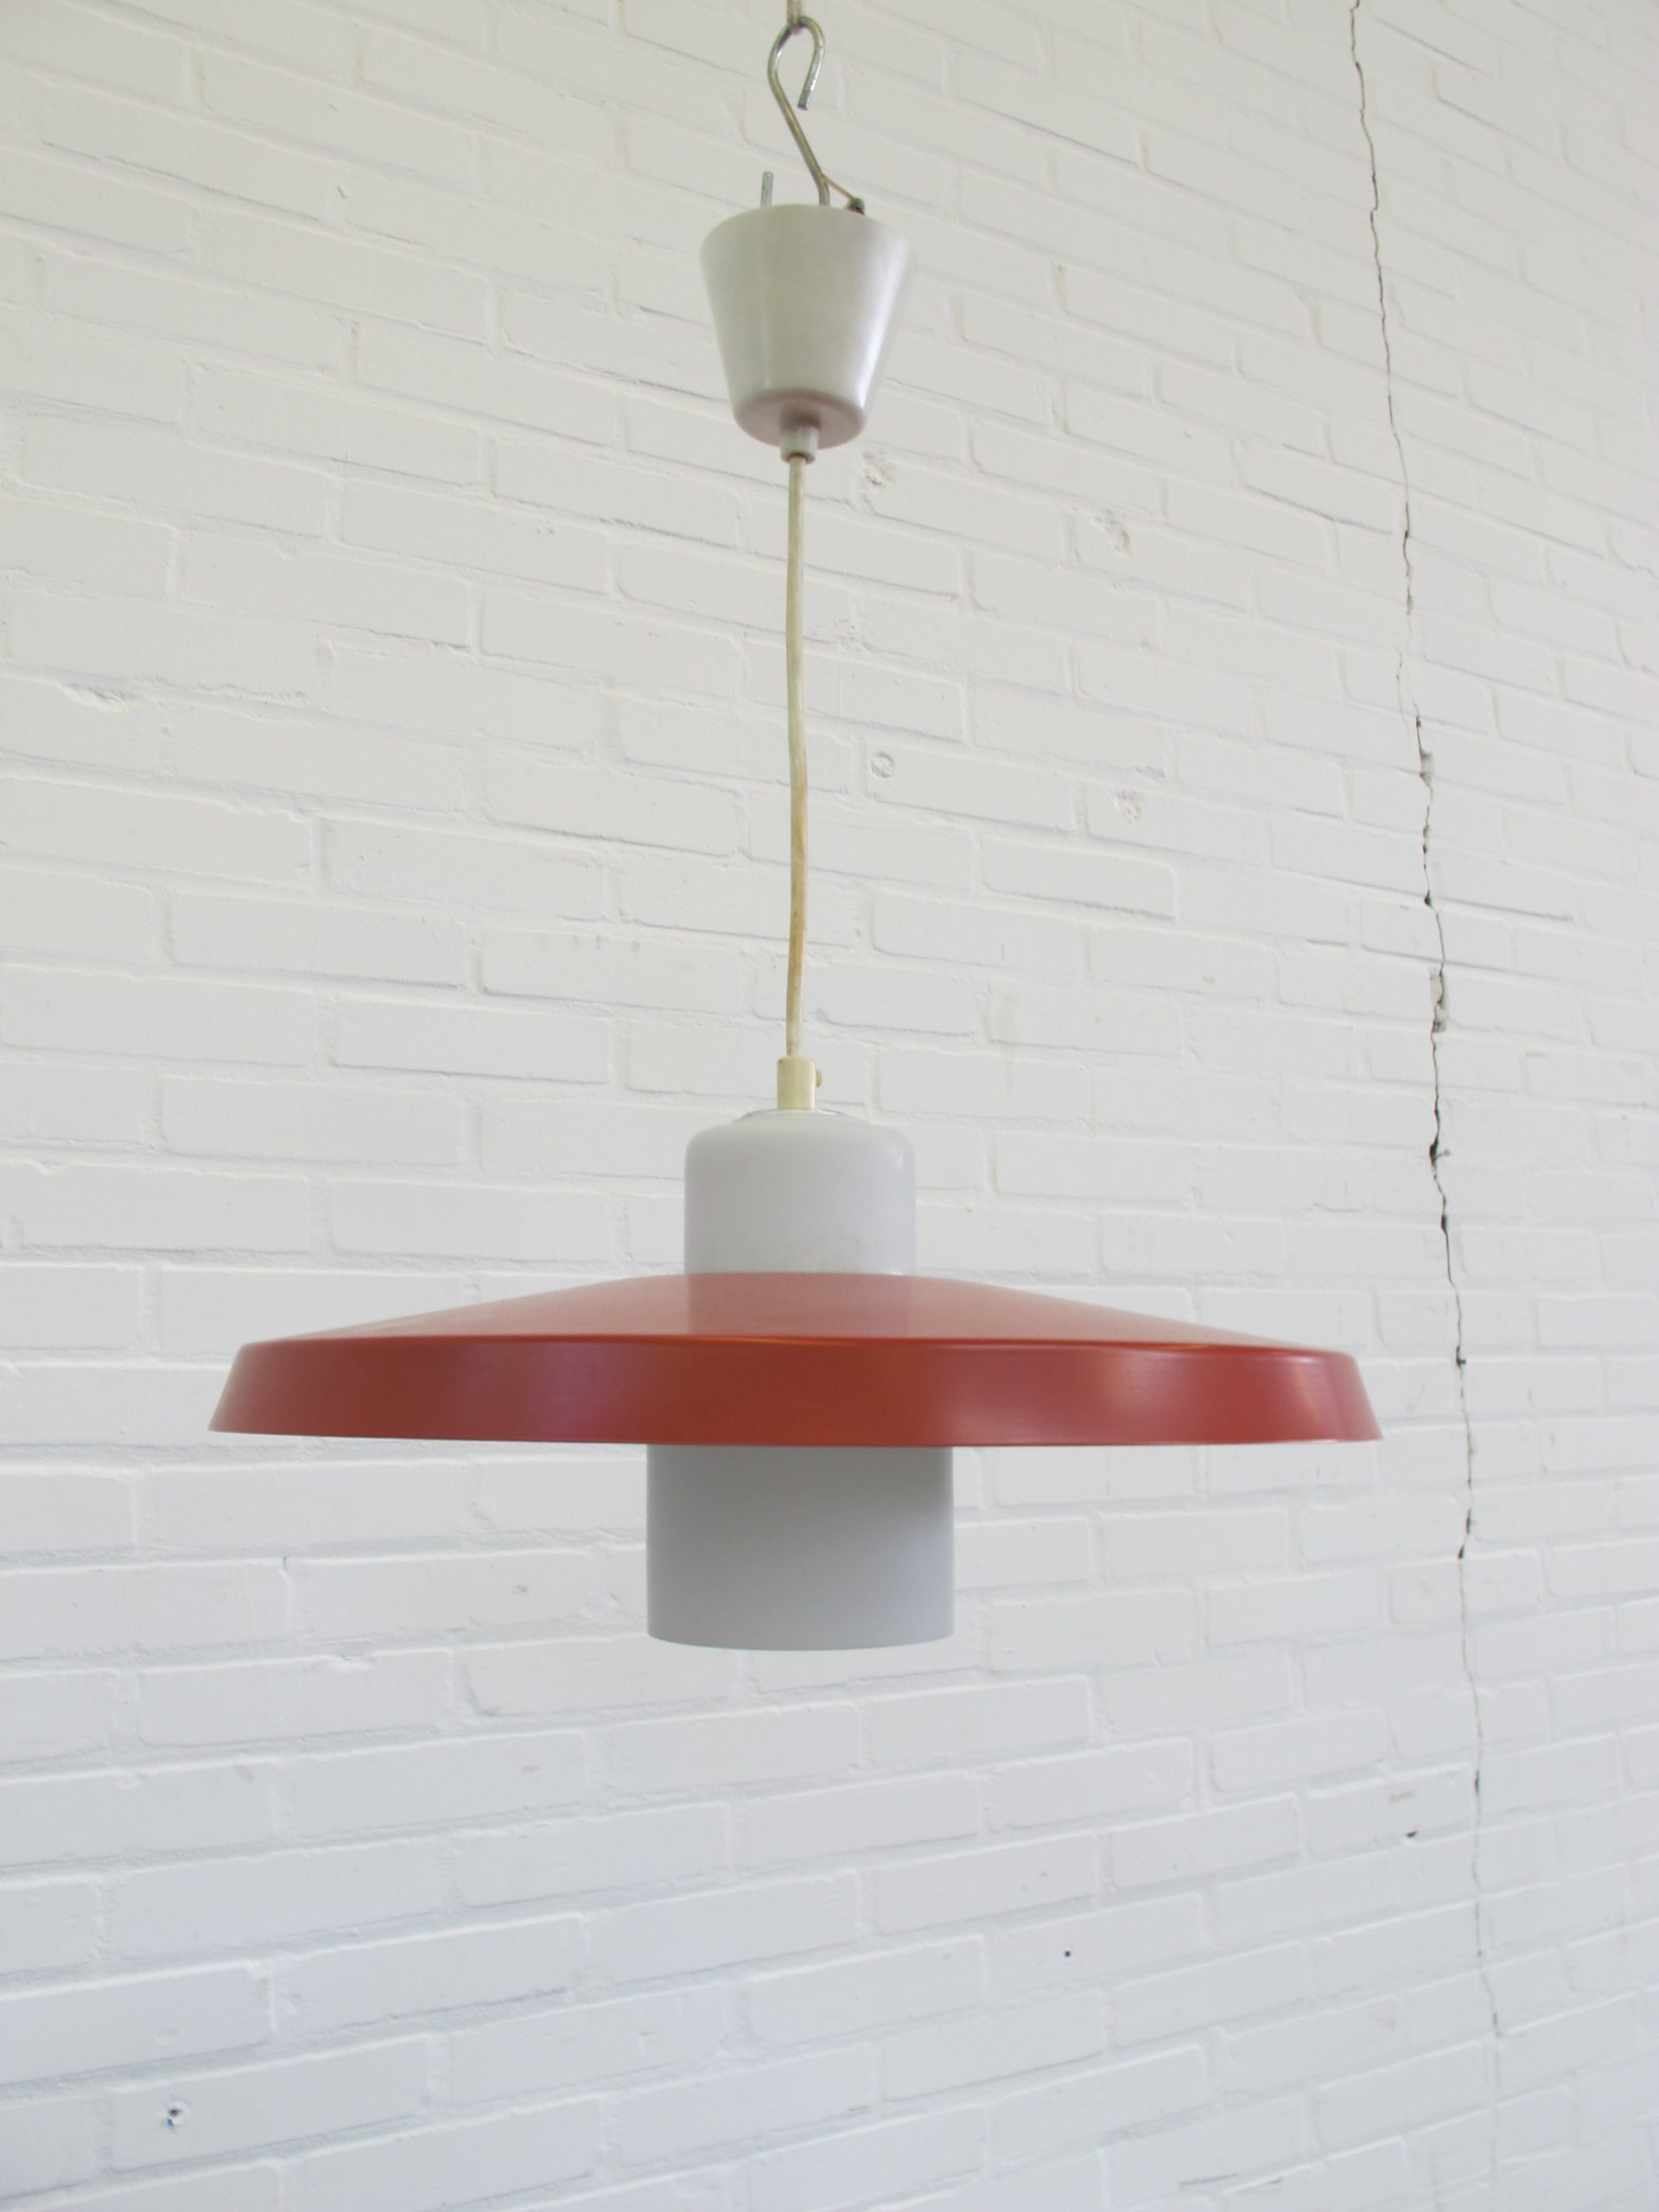 Lamp Philips Louis Kalff hanglamp hanging lamp vintage midcentury